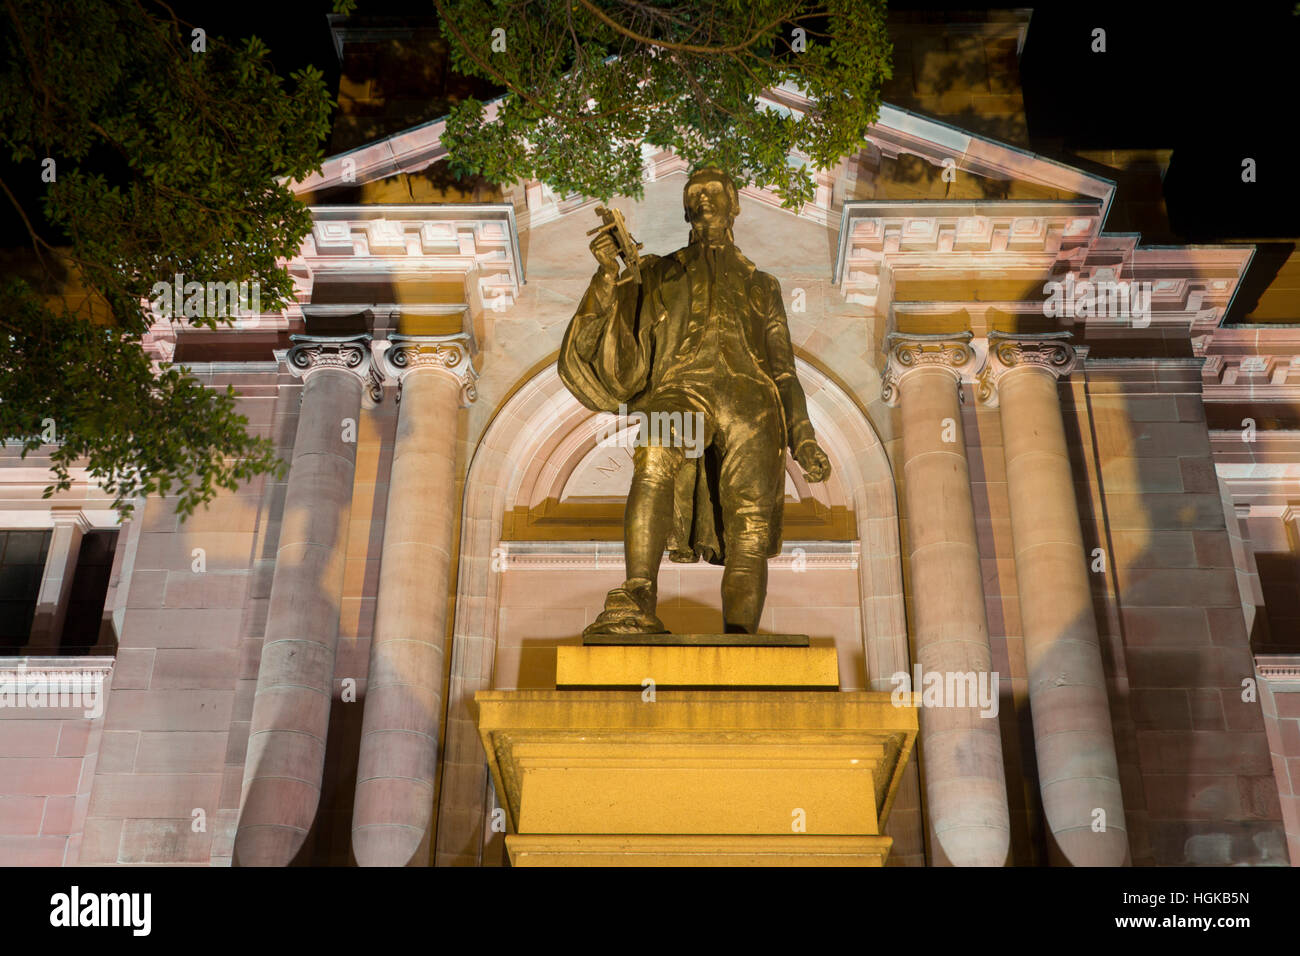 Statue de l'explorateur Matthew Flinders holding sextant à l'extérieur de la bibliothèque de l'état de NSW Sydney NSW Australie la nuit Banque D'Images